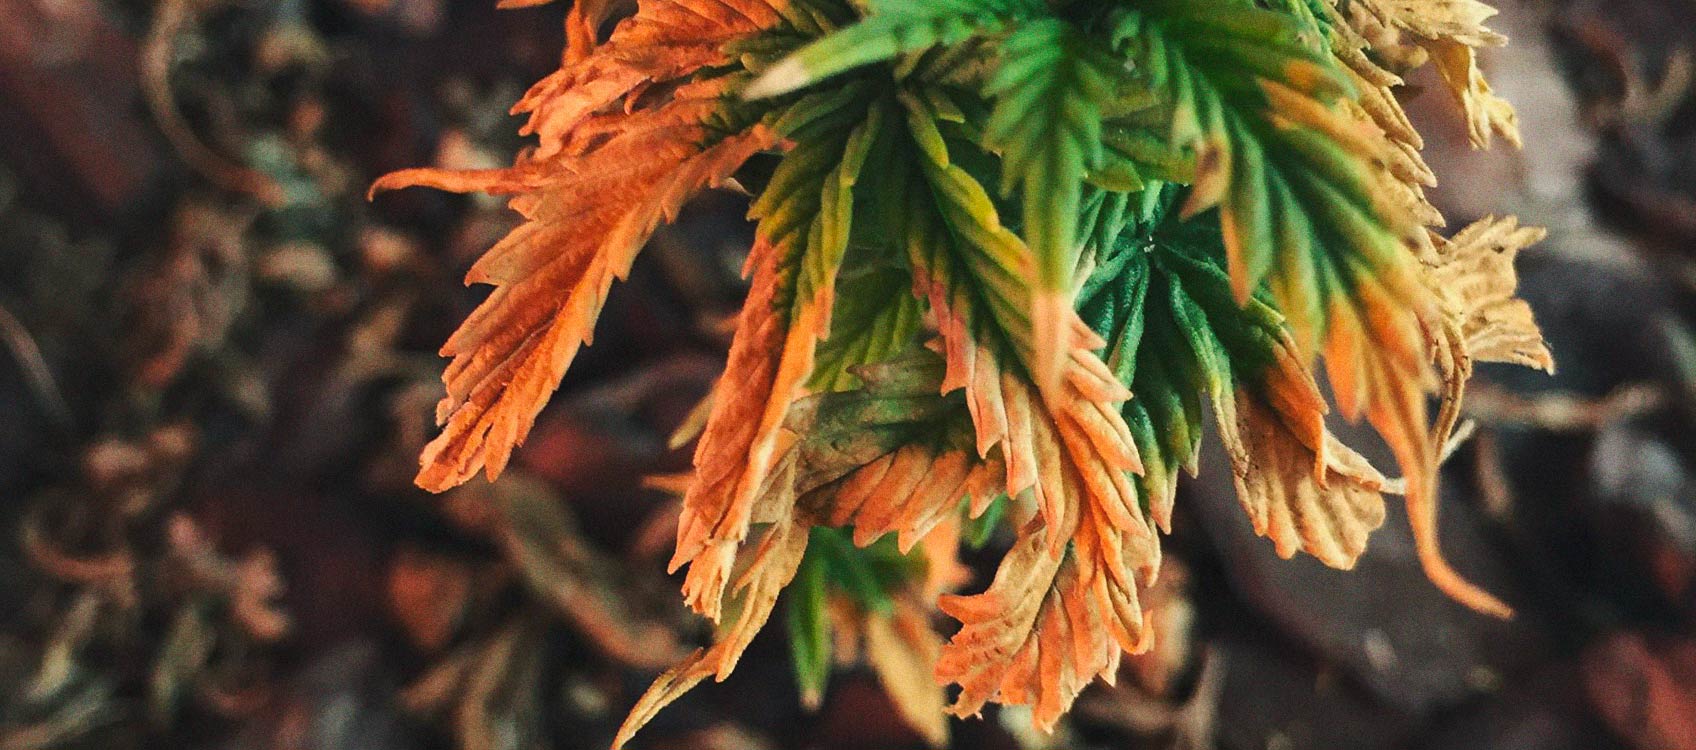 Identificare e trattare le comuni malattie della cannabis 